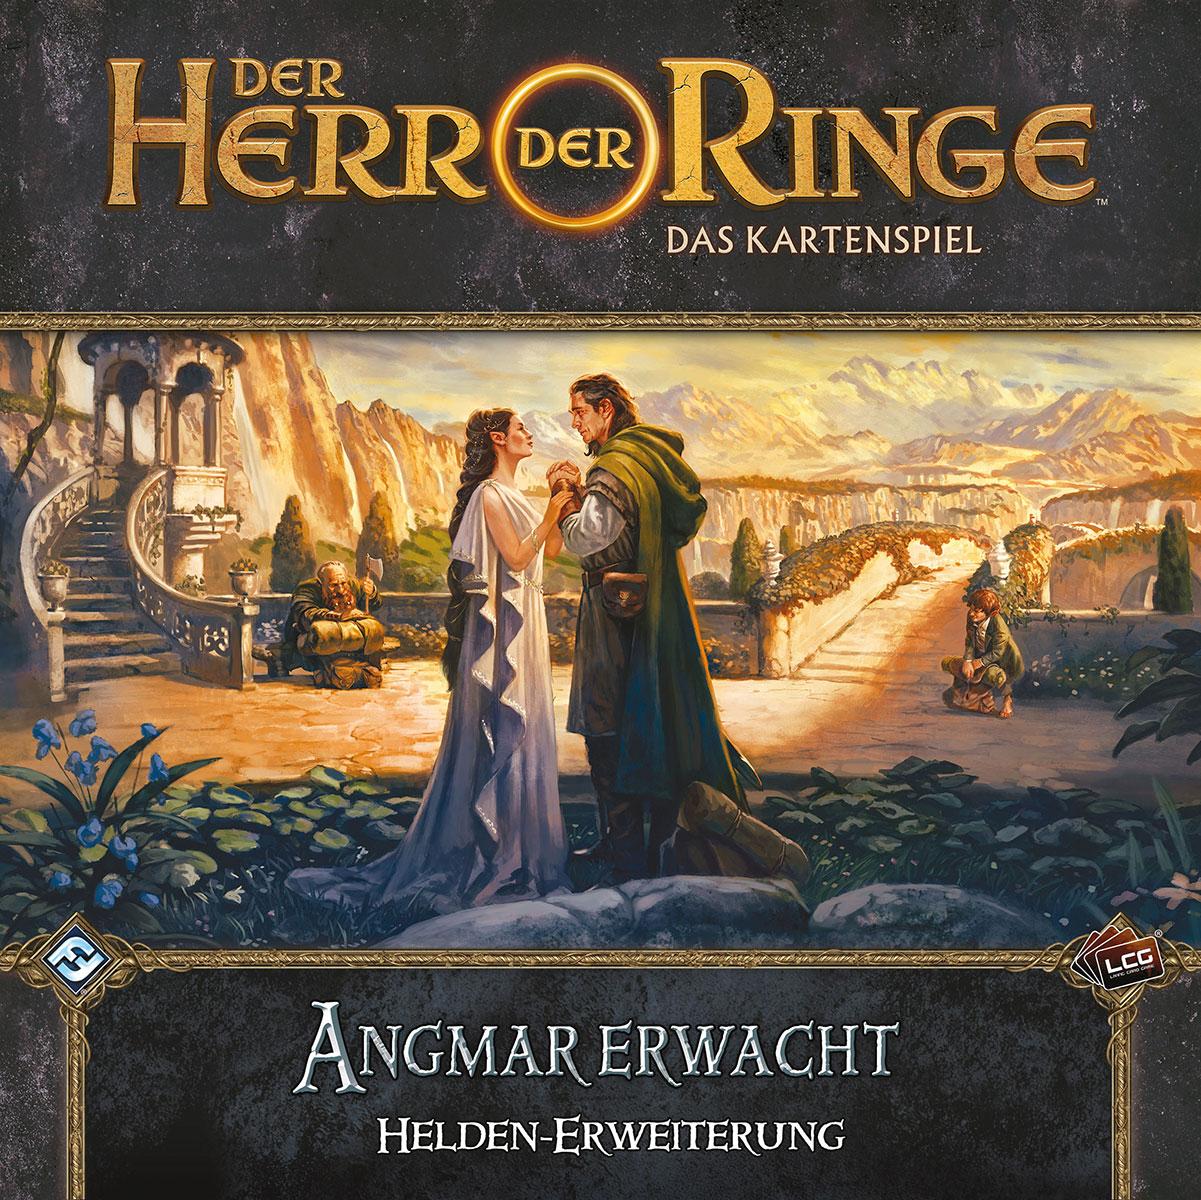 Der Herr der Ringe: Das Kartenspiel - Helden-Erweiterung: Angmar Erwacht